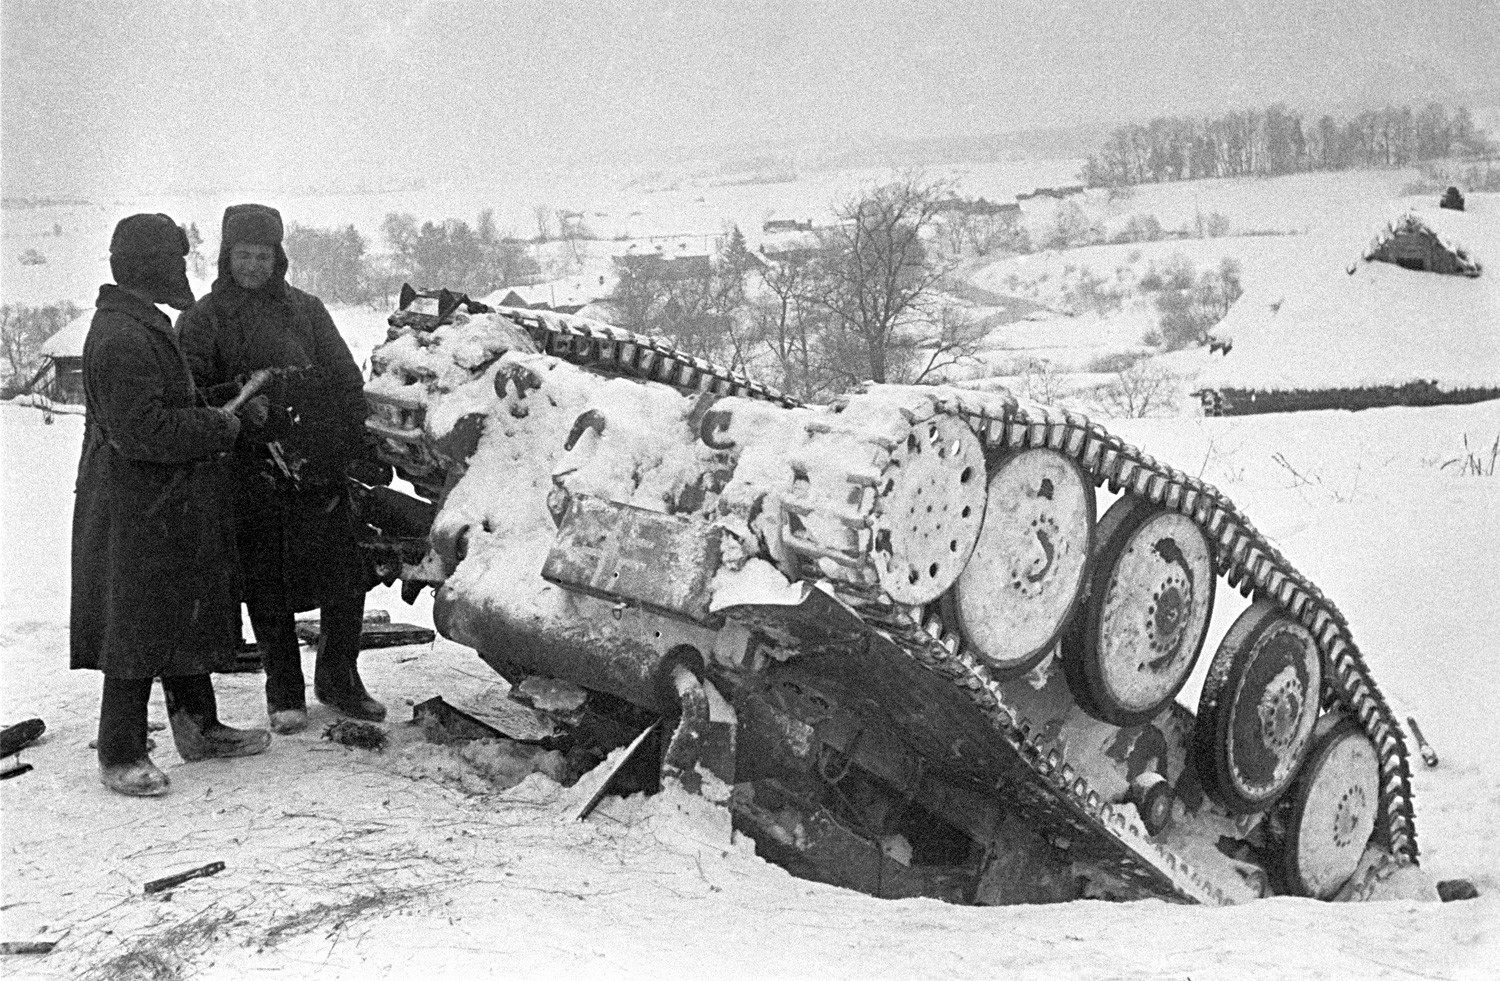 Crvenoarmejci kraj uništenog nacističkog tenka

